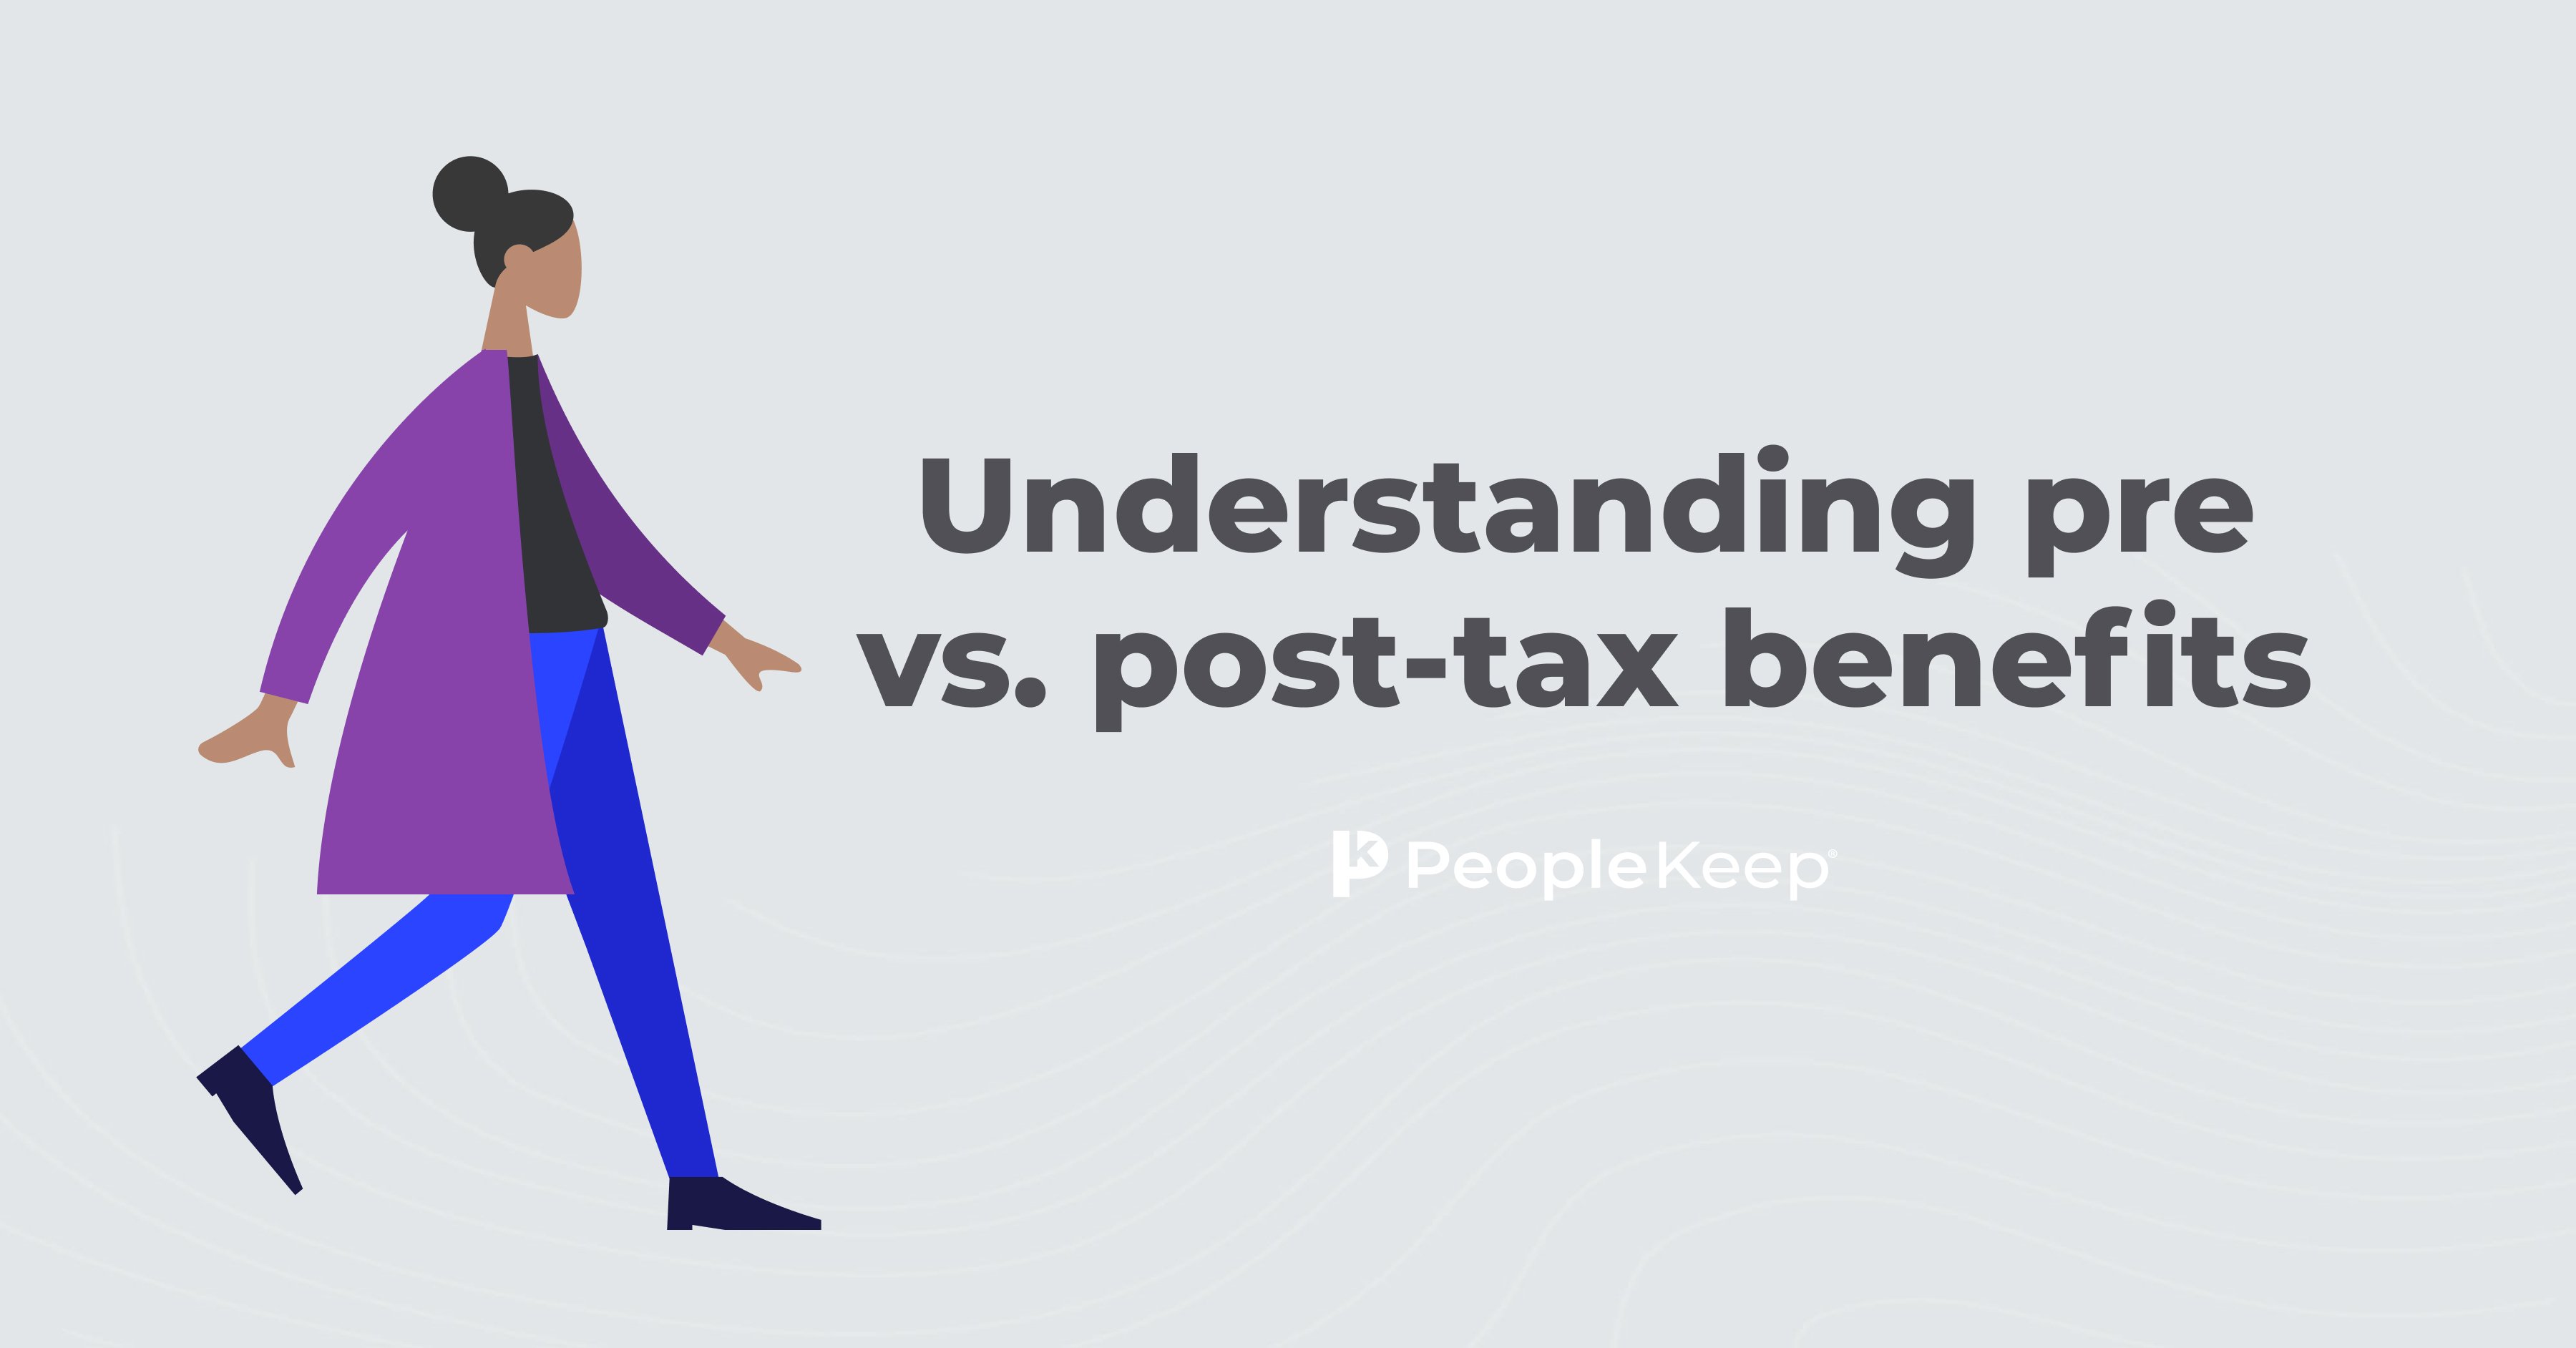 Understanding pre vs. posttax benefits